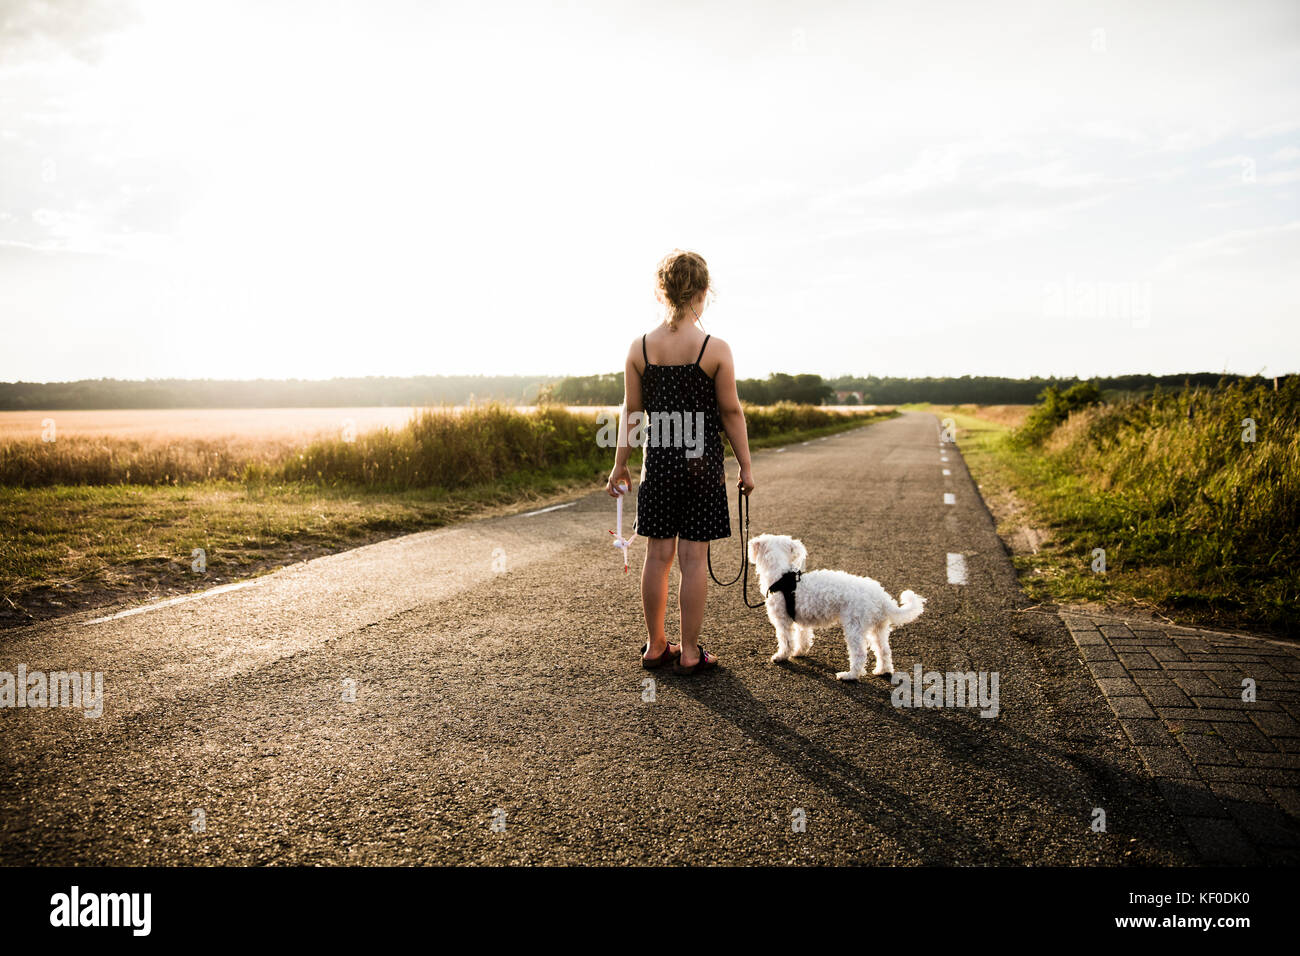 Mädchen mit Hund stehend auf ländlichen Straßenlage Miniatur Wind Turbine Stockfoto